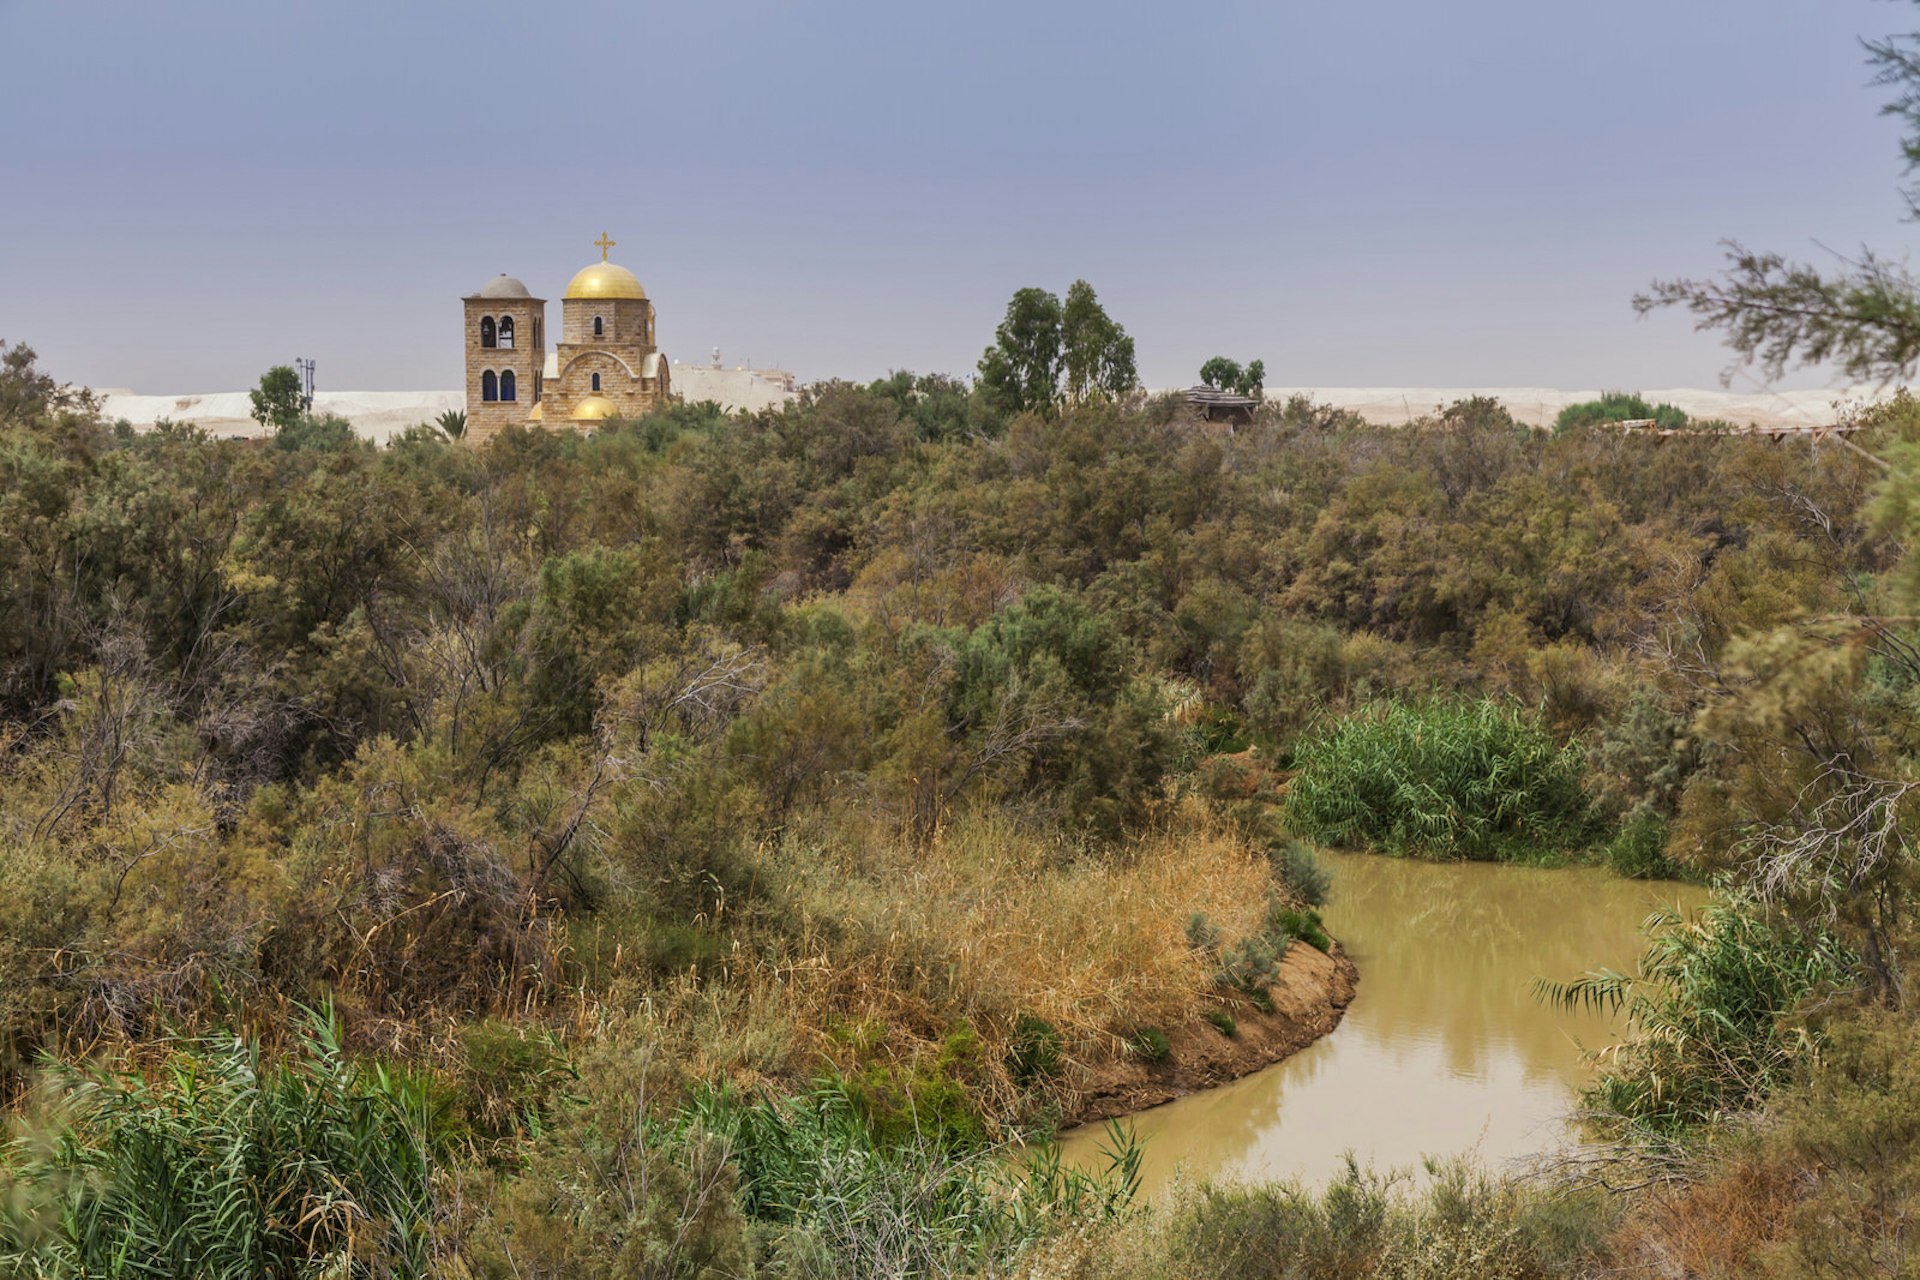 Greek Orthodox St. John Church, Jordan River, Jordan. Image by Anton Petrus / Getty Images